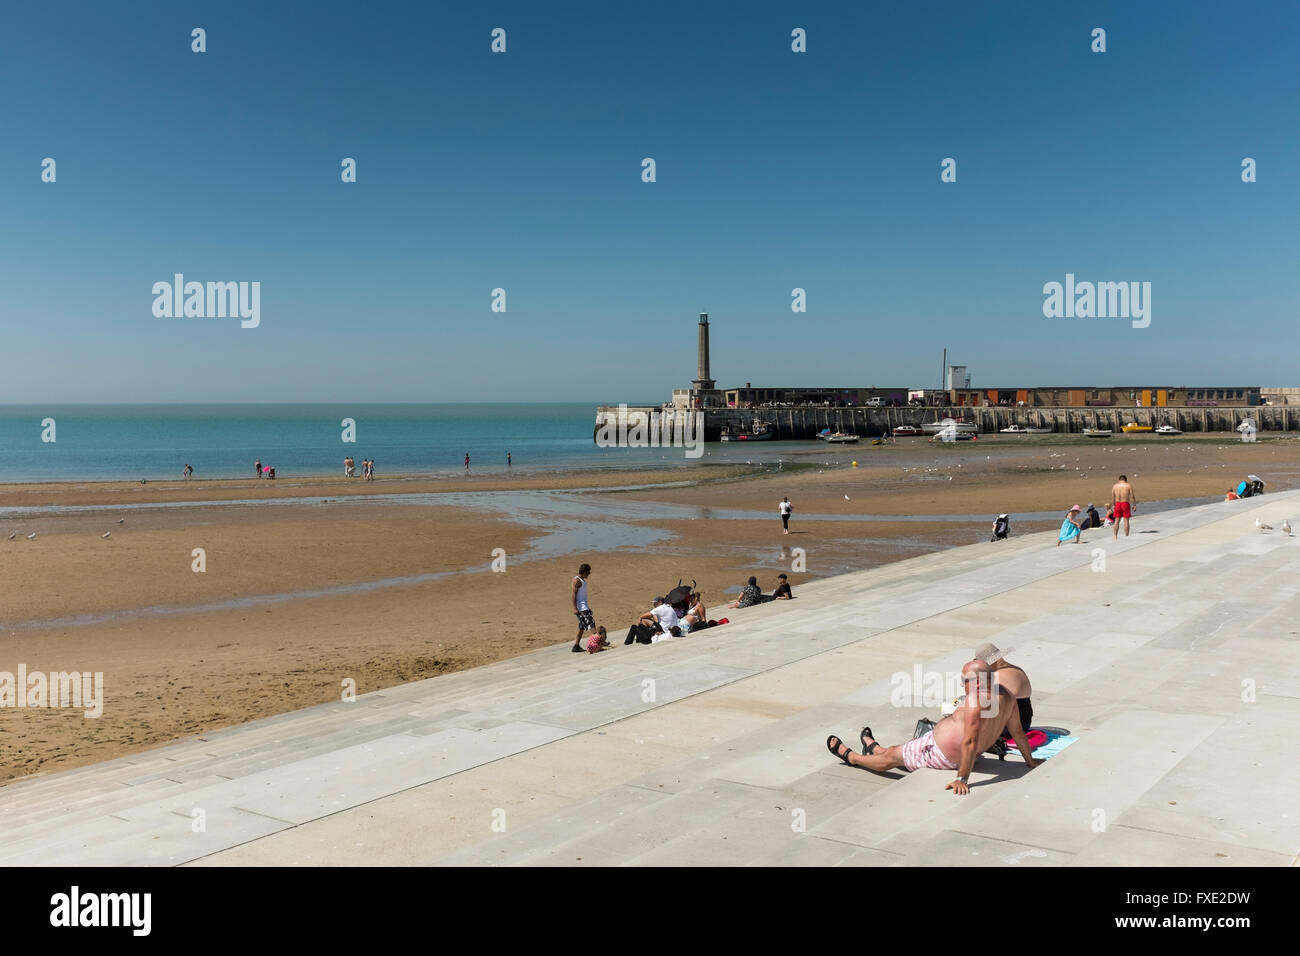 Sunbathers at seafront of Margate, Kent, UK Stock Photo